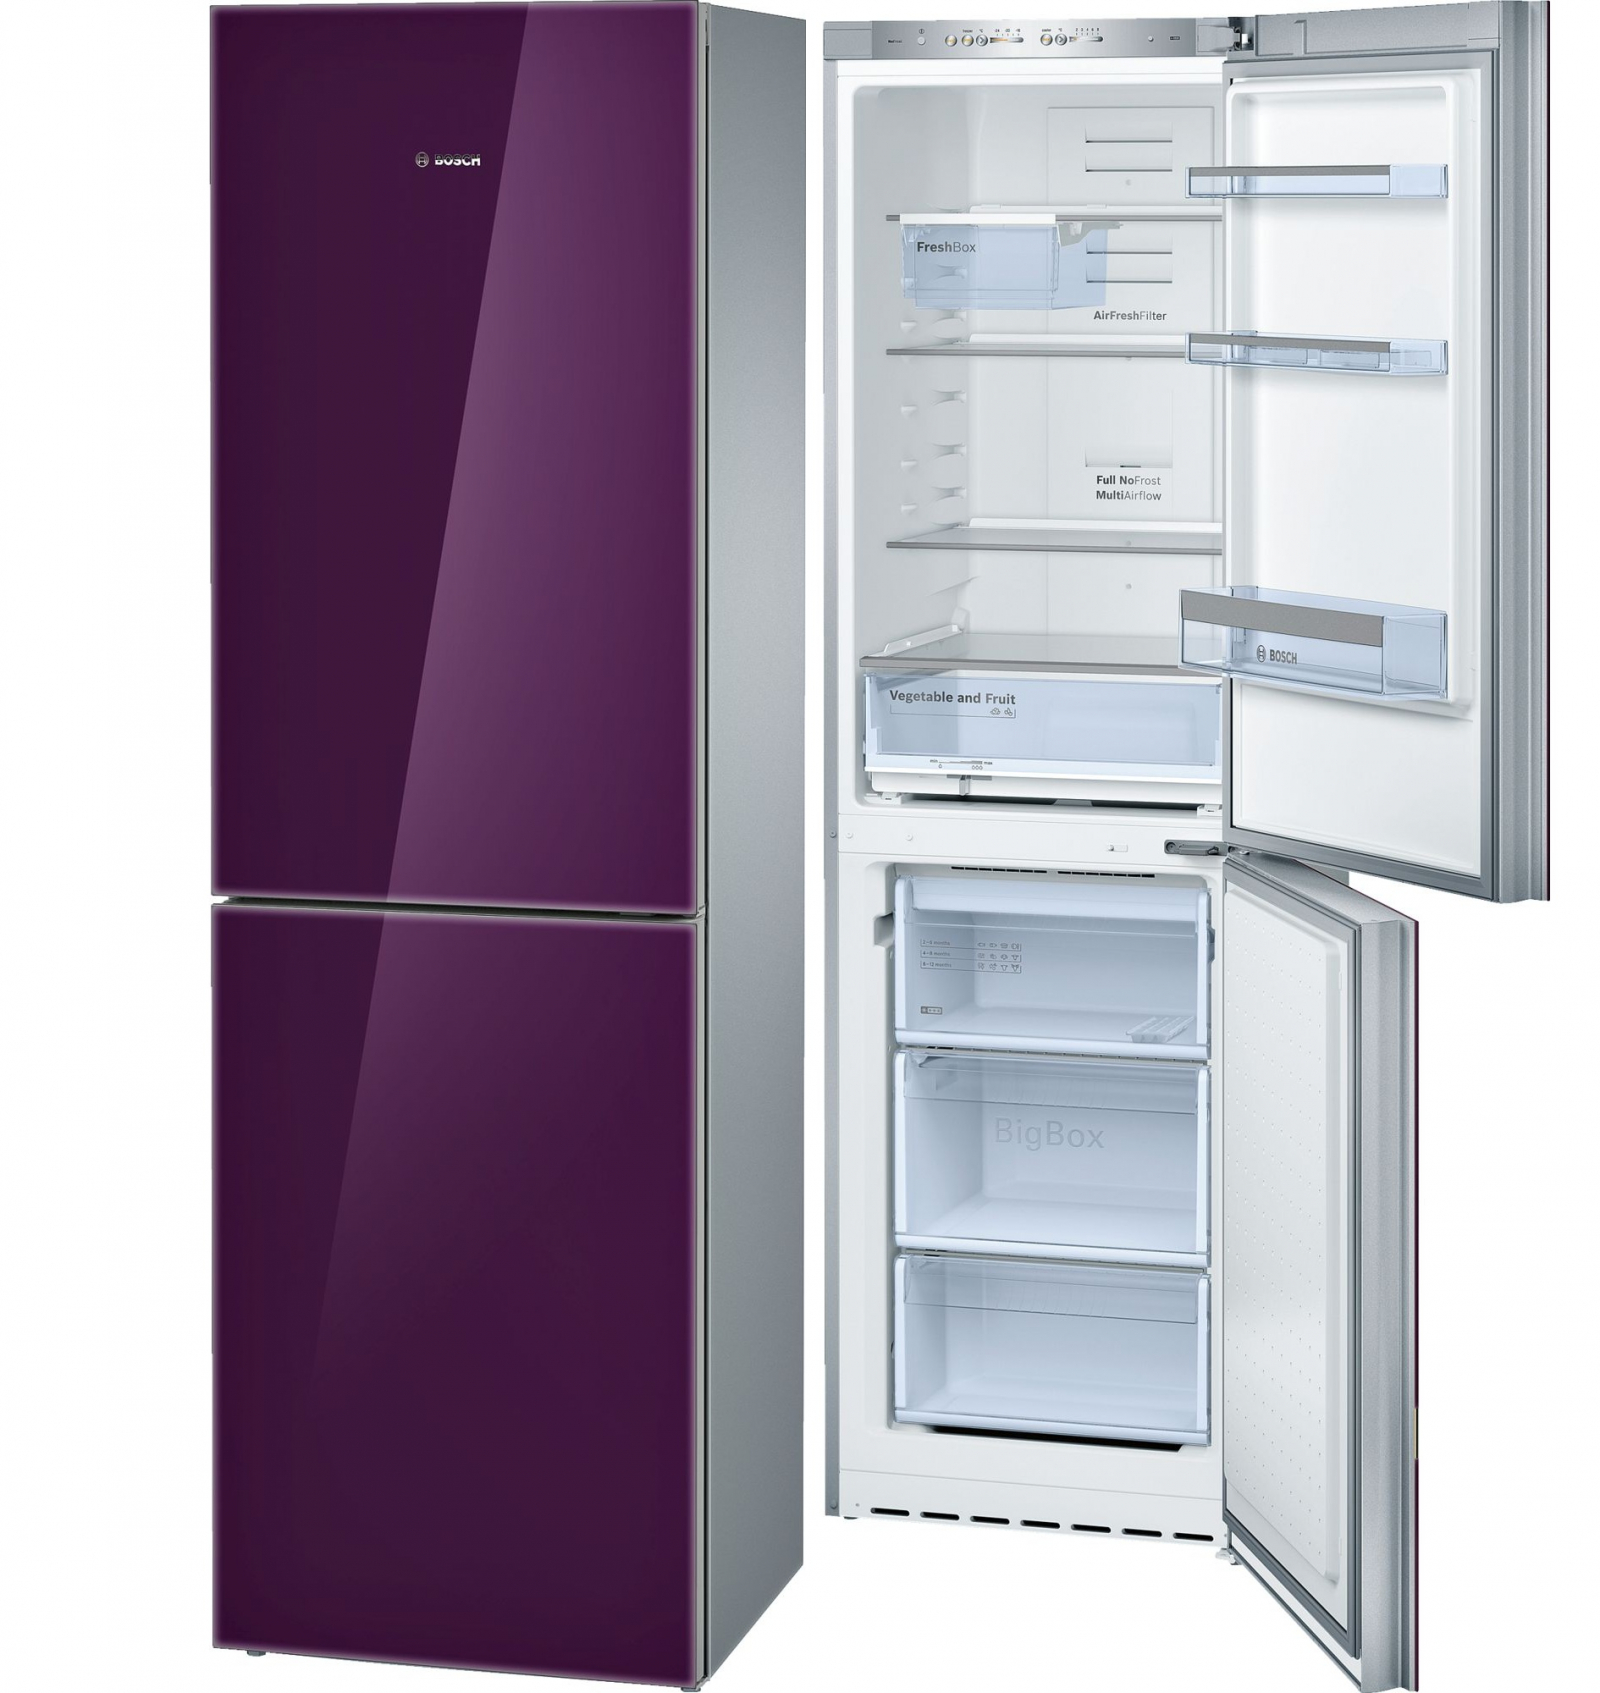 холодильник bosch kgn39la10r, купить в Красноярске холодильник bosch kgn39la10r,  купить в Красноярске дешево холодильник bosch kgn39la10r, купить в Красноярске минимальной цене холодильник bosch kgn39la10r